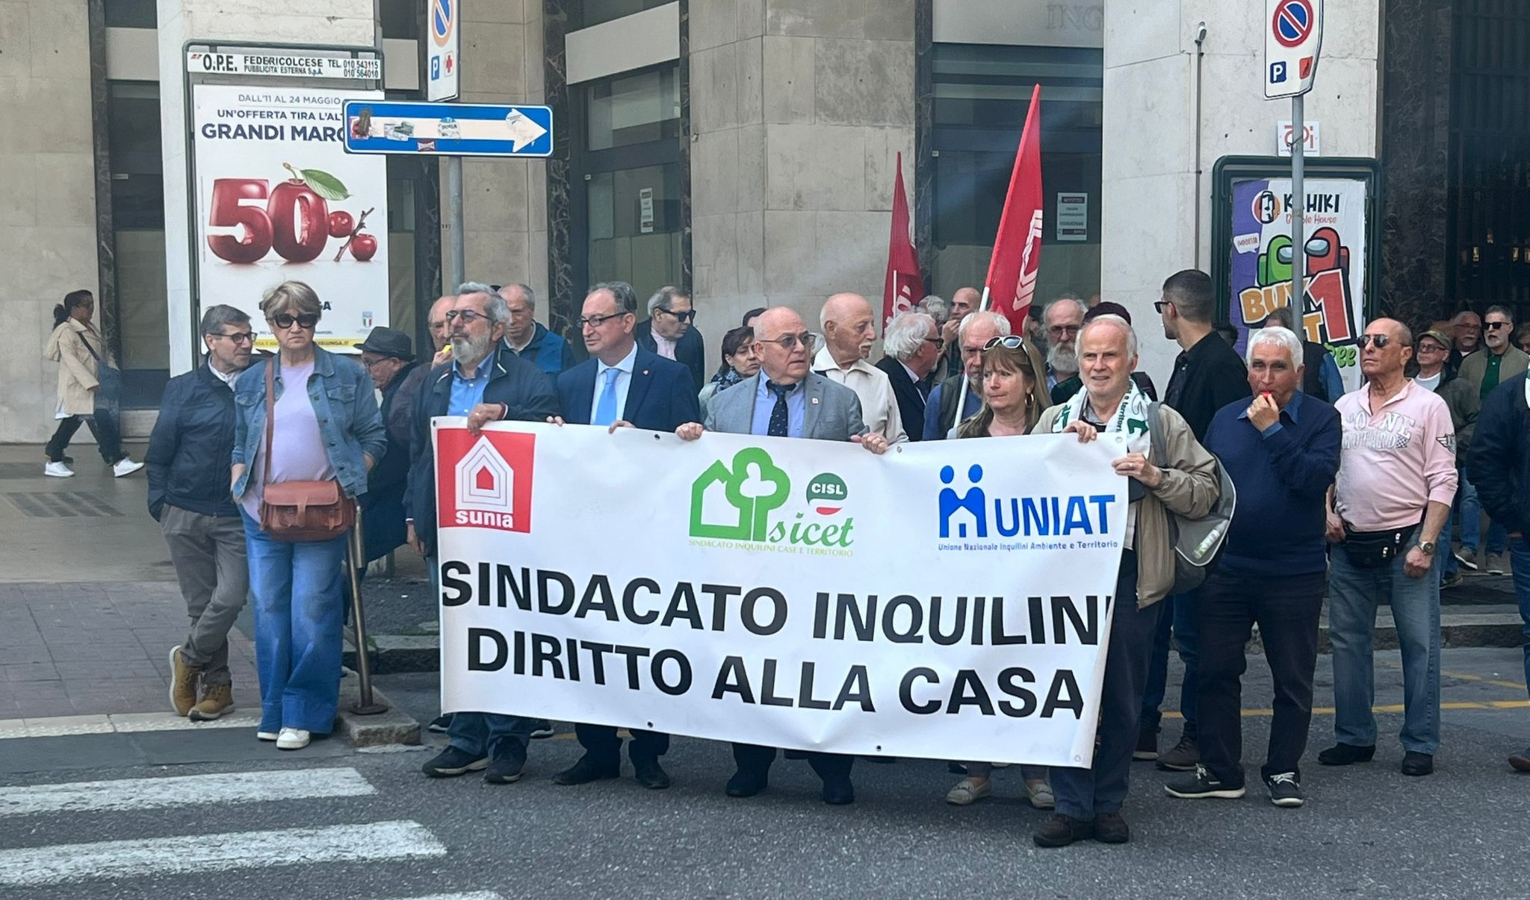 Gli 'inquilini' scendono in piazza: manifestazione in centro a Genova